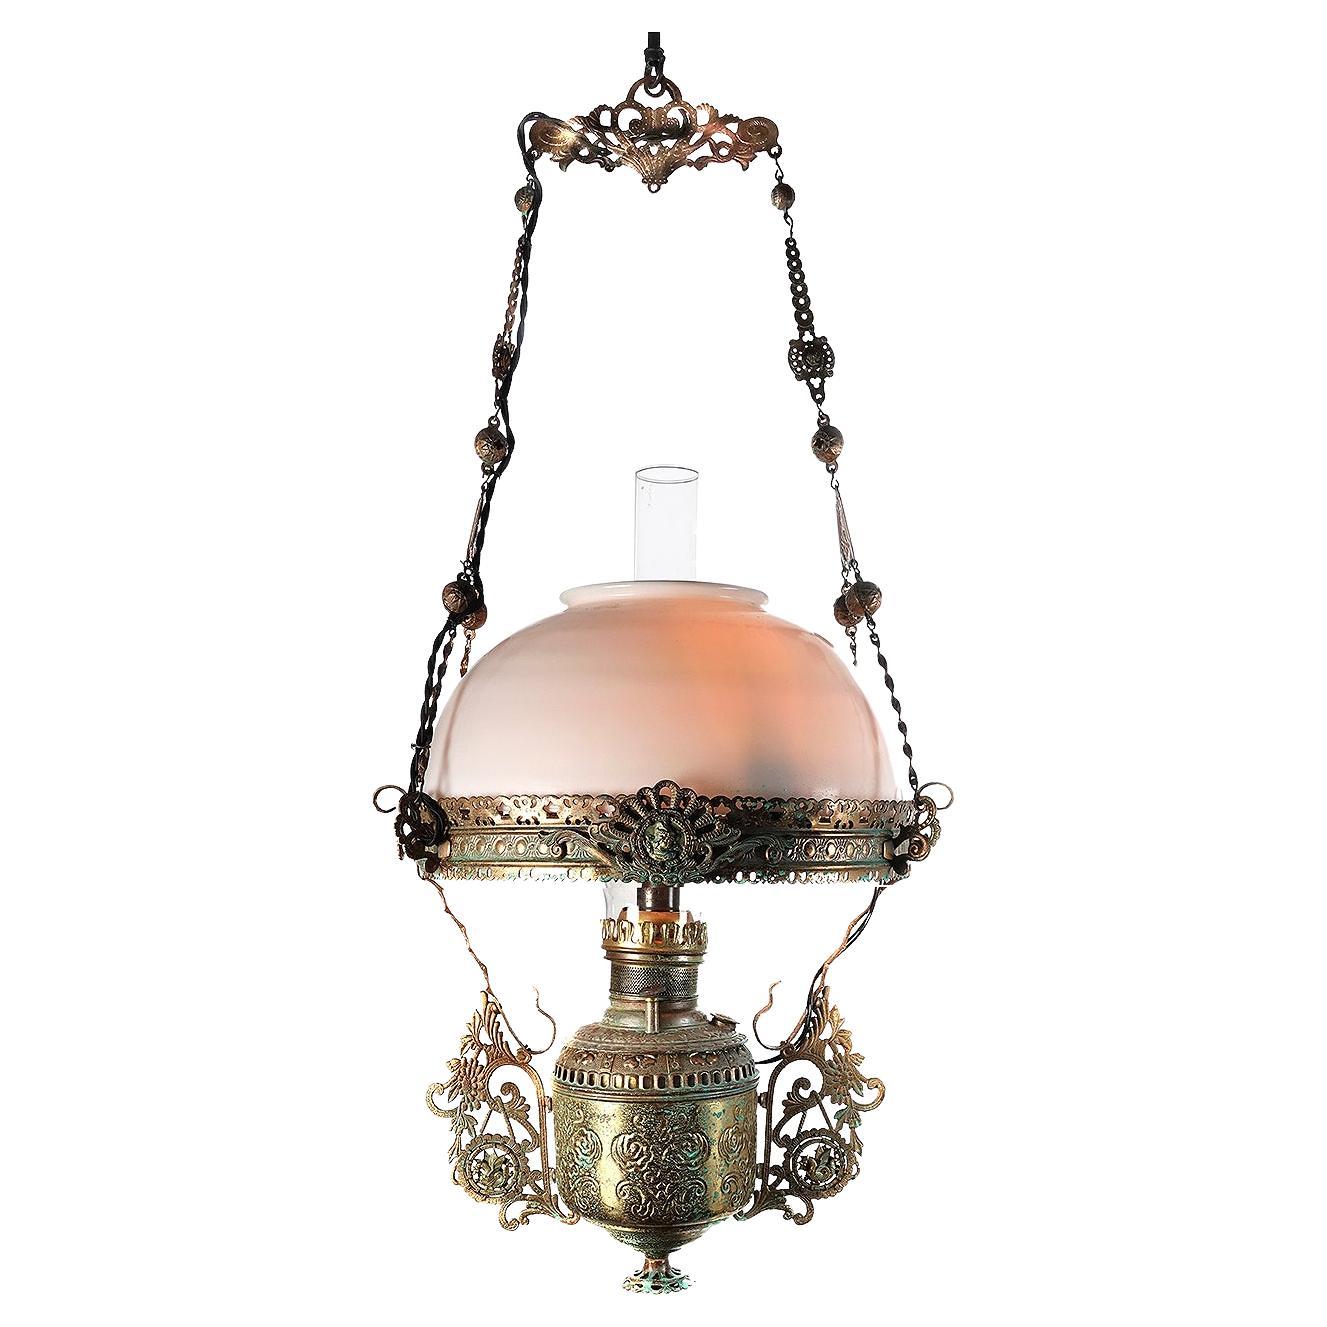 Lampe à huile des années 1880 très détaillée, électrifiée